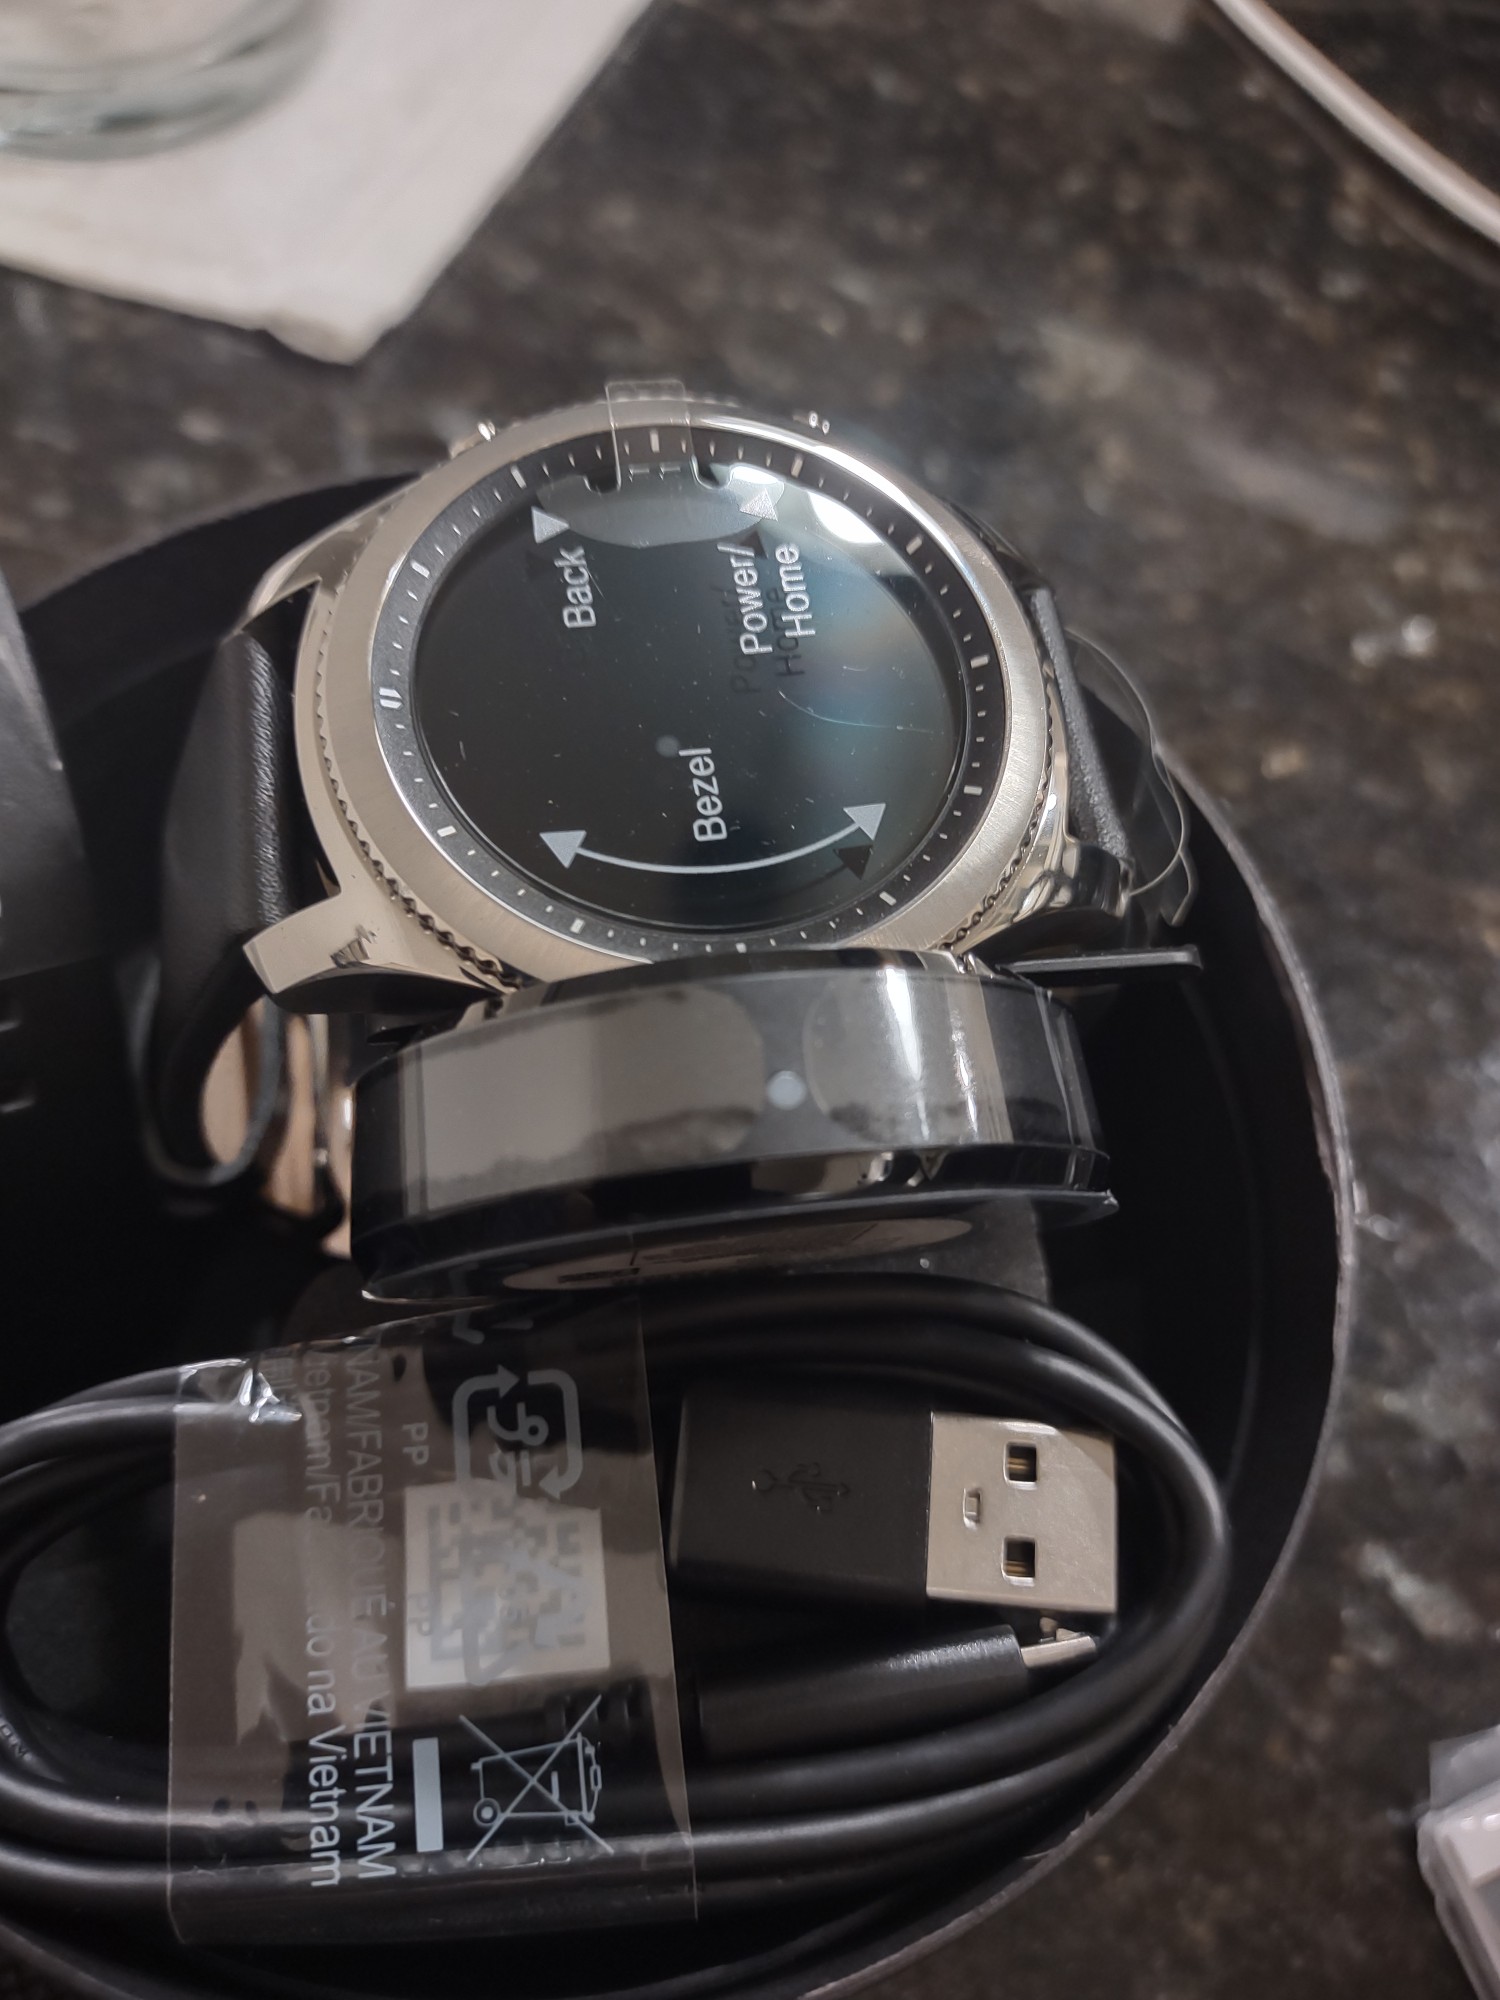 accesorios para electronica - Vendo Samsung Galaxy smart watch S3 nuevo sellado edicion especial , GPS